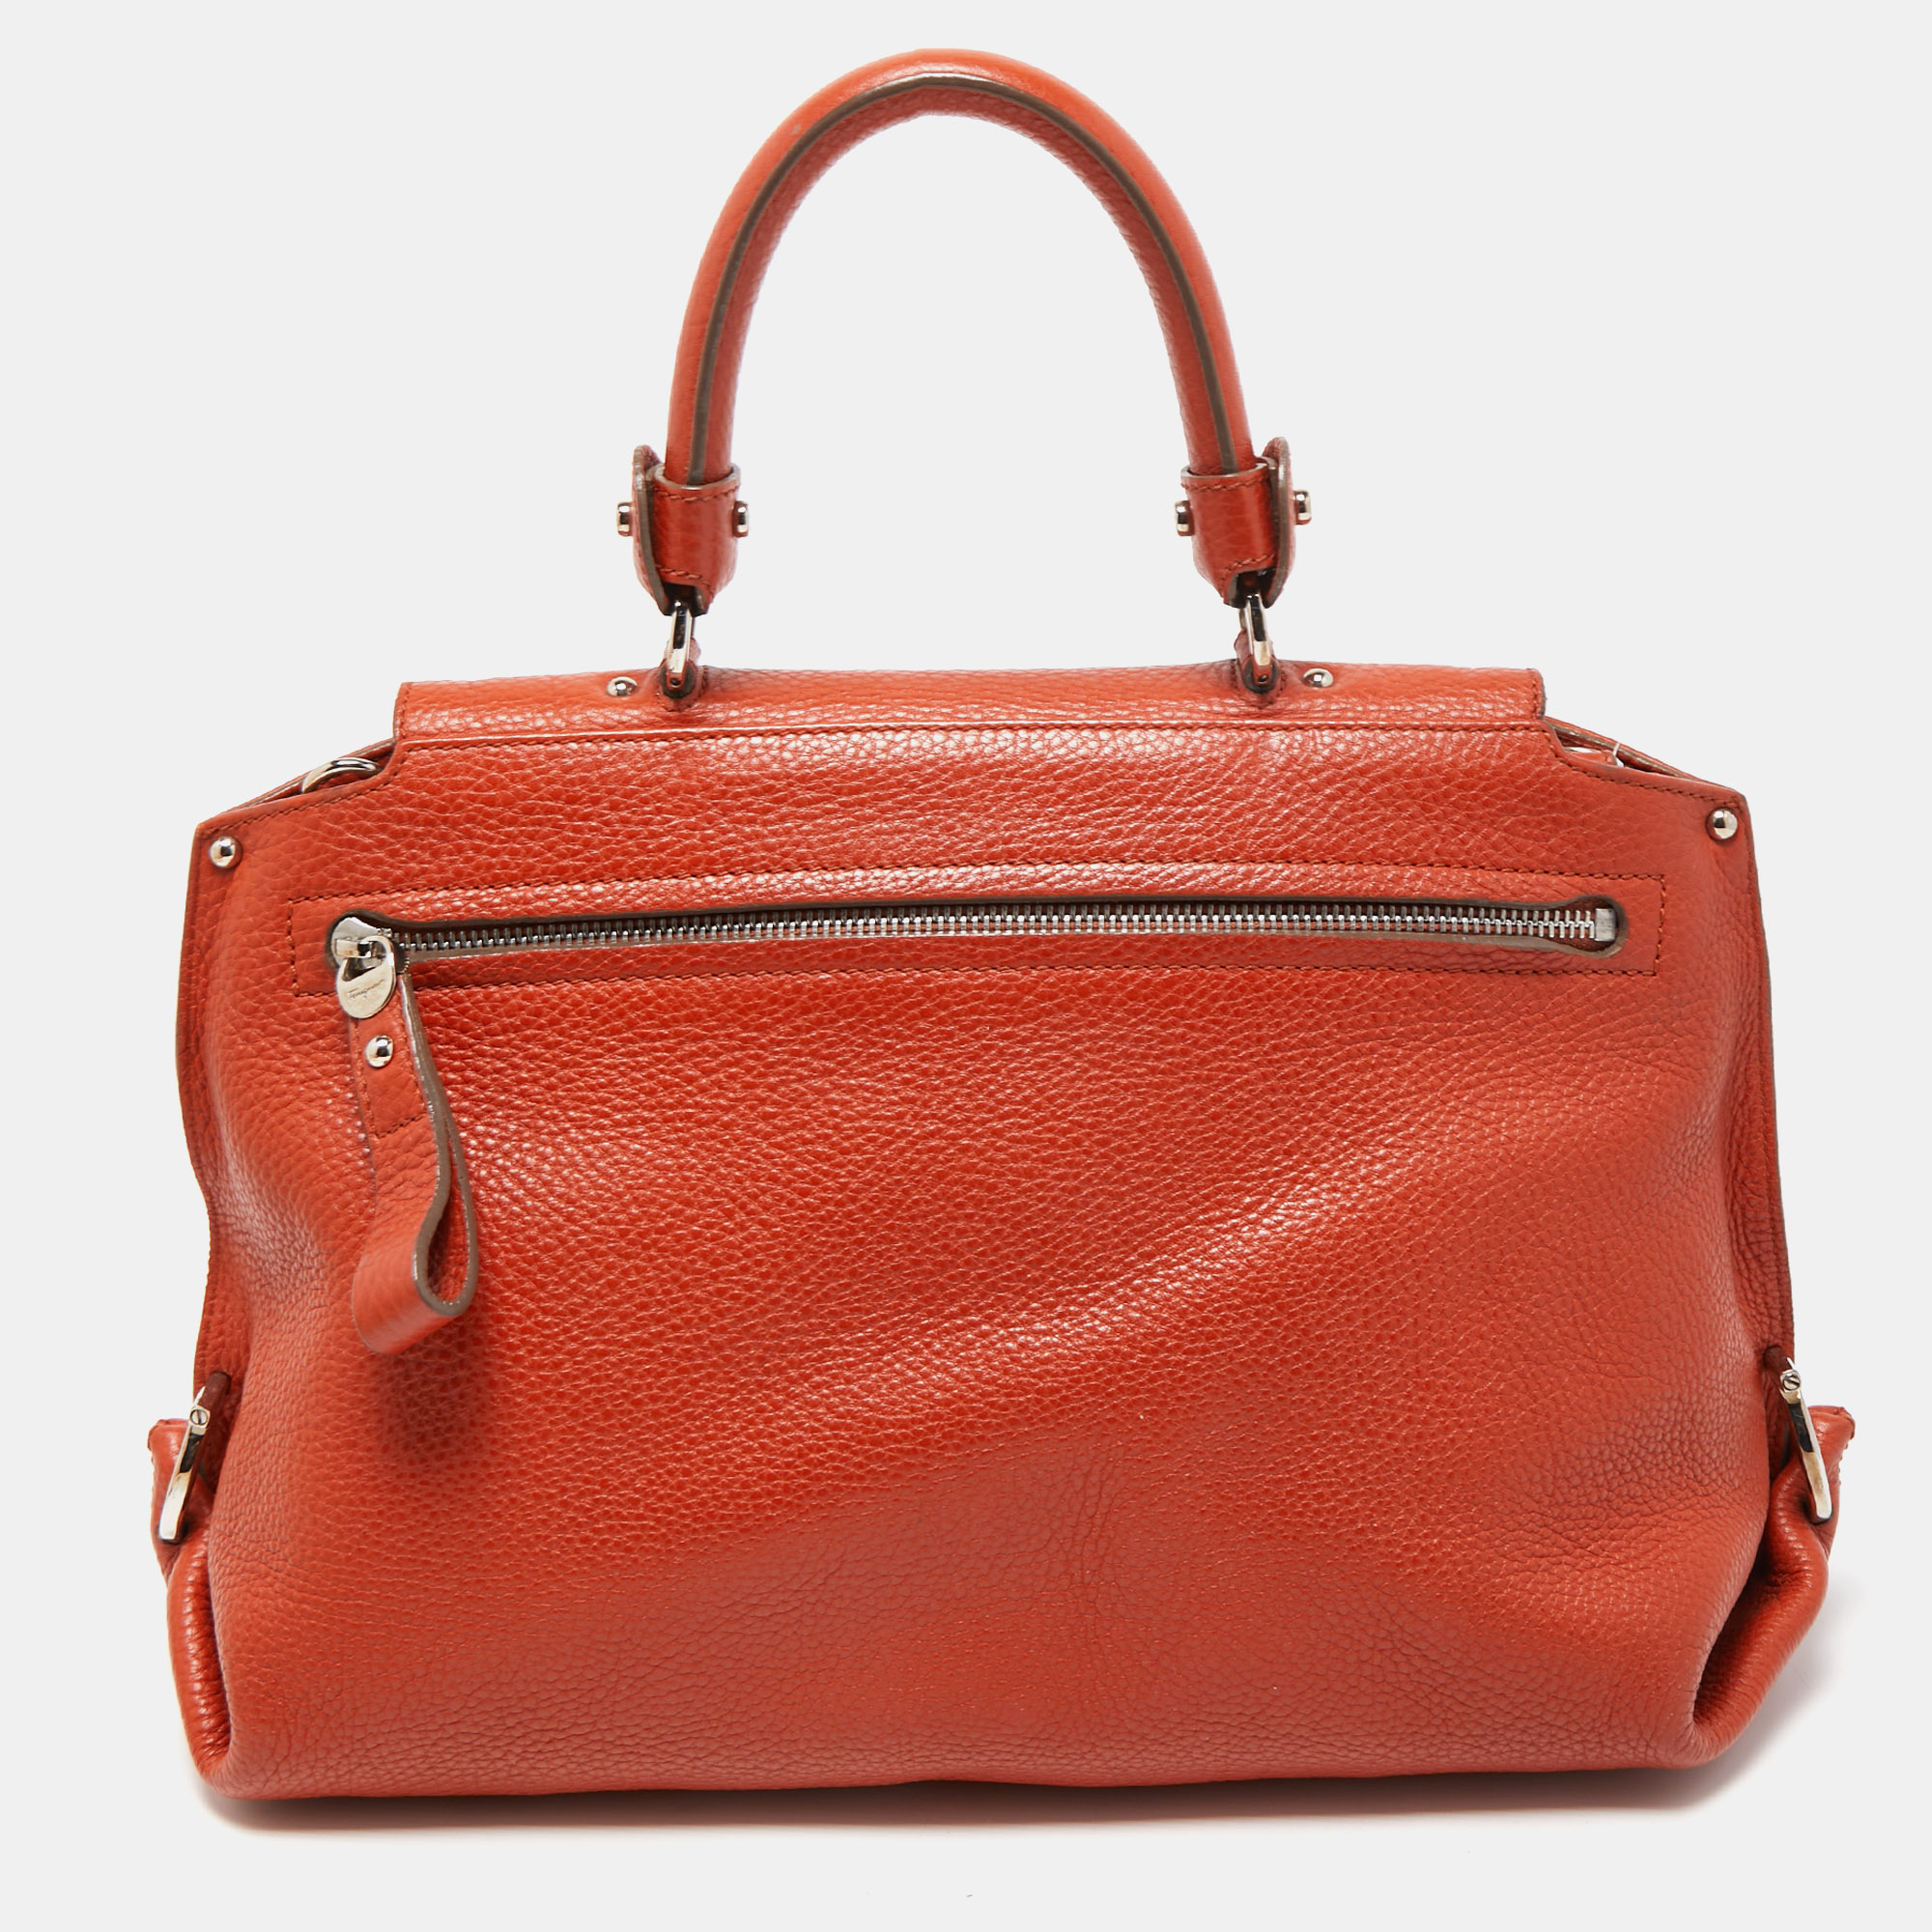 Salvatore Ferragamo Orange Leather Medium Sofia Top Handle Bag